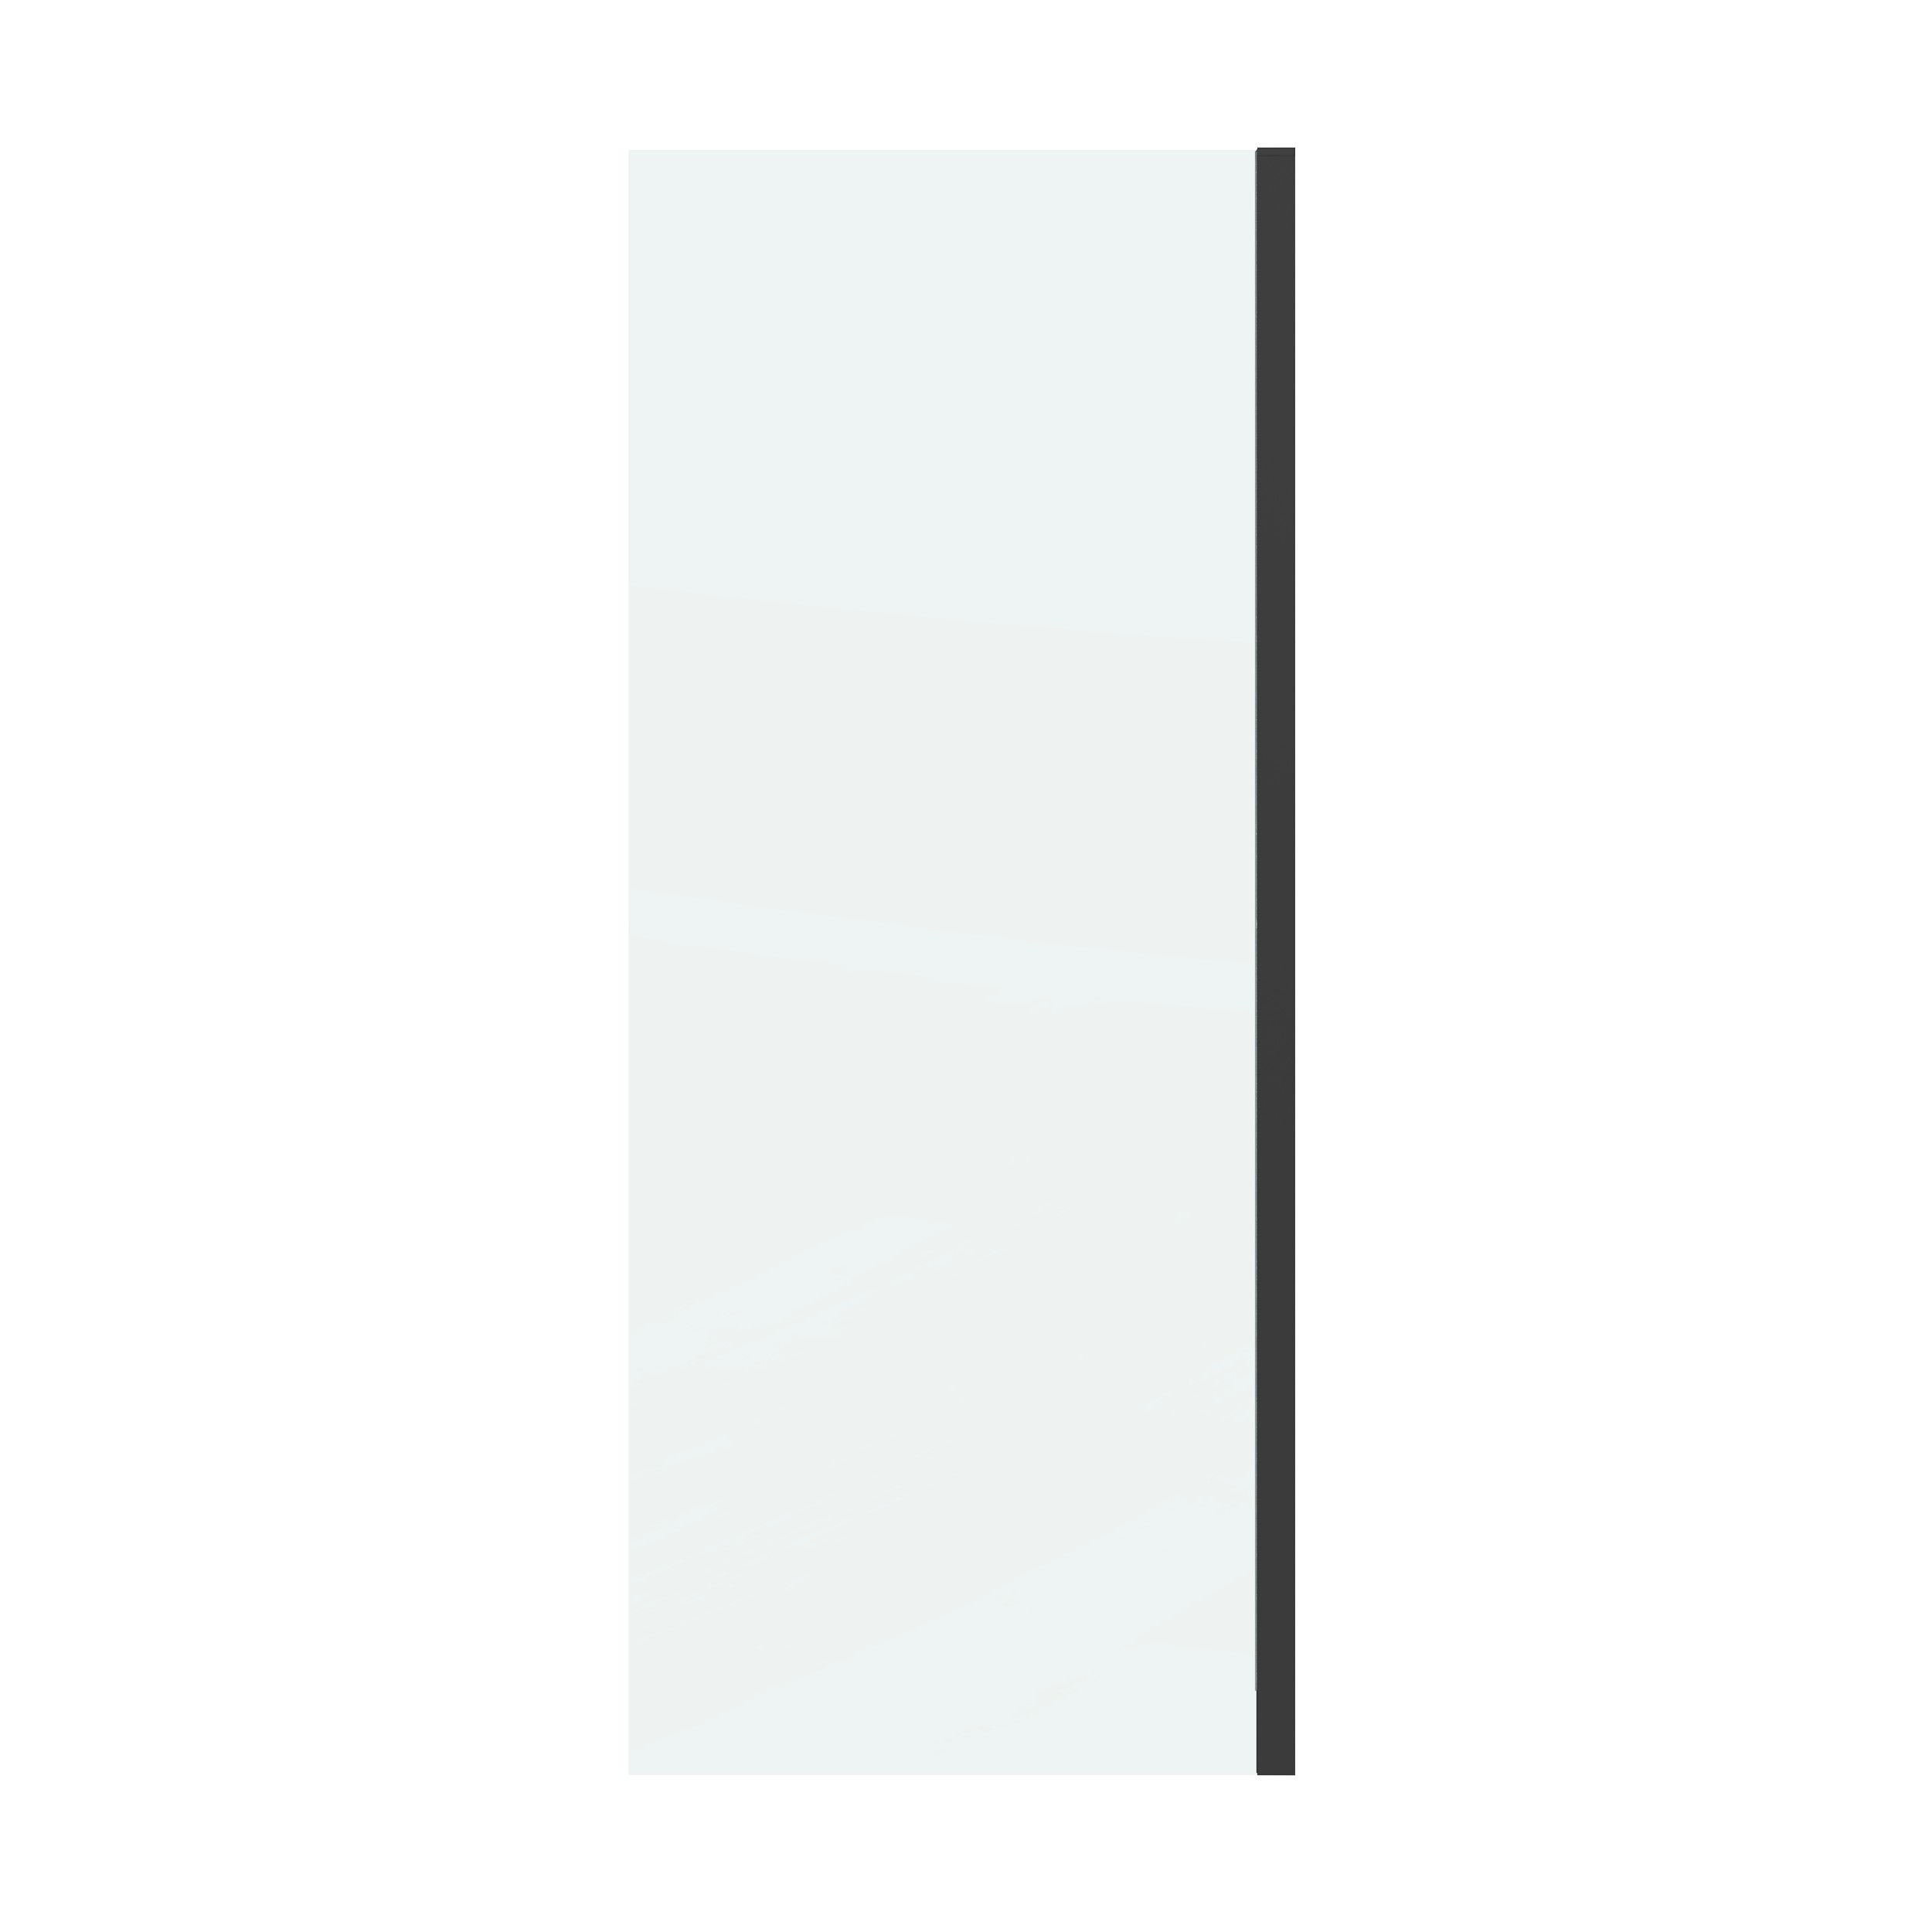 Боковая стенка Grossman Classic 80x195 200.K33.04.80.21.00 стекло прозрачное, профиль черный матовый - фото 1